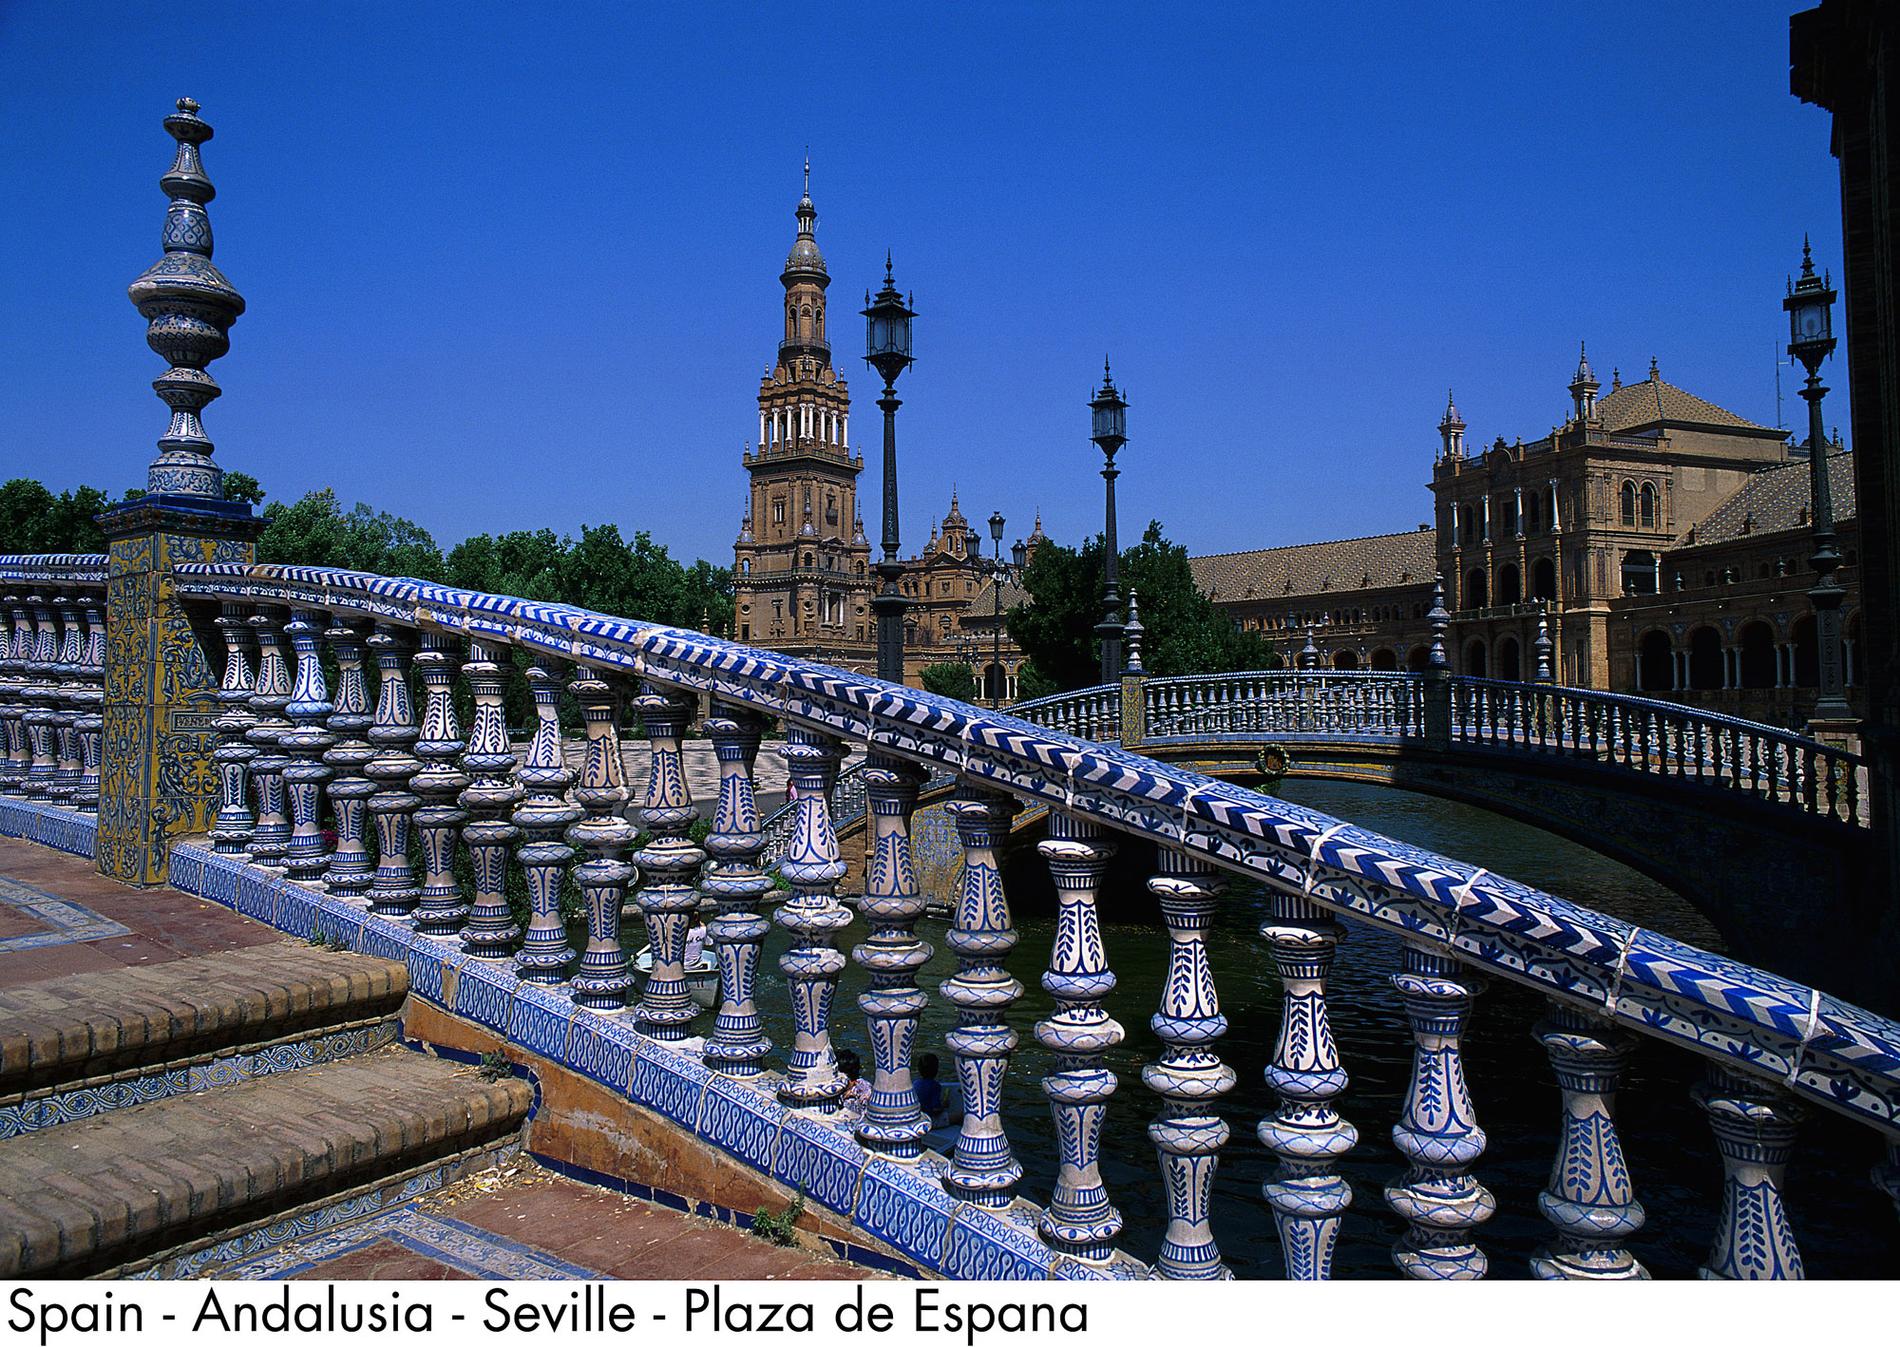 8. Sevilla, Spanien Spaniens fjärde största stad Sevilla lockar många turister tack vare sina vackra katedraler, fina torg, trädgårdar och kyrkor.